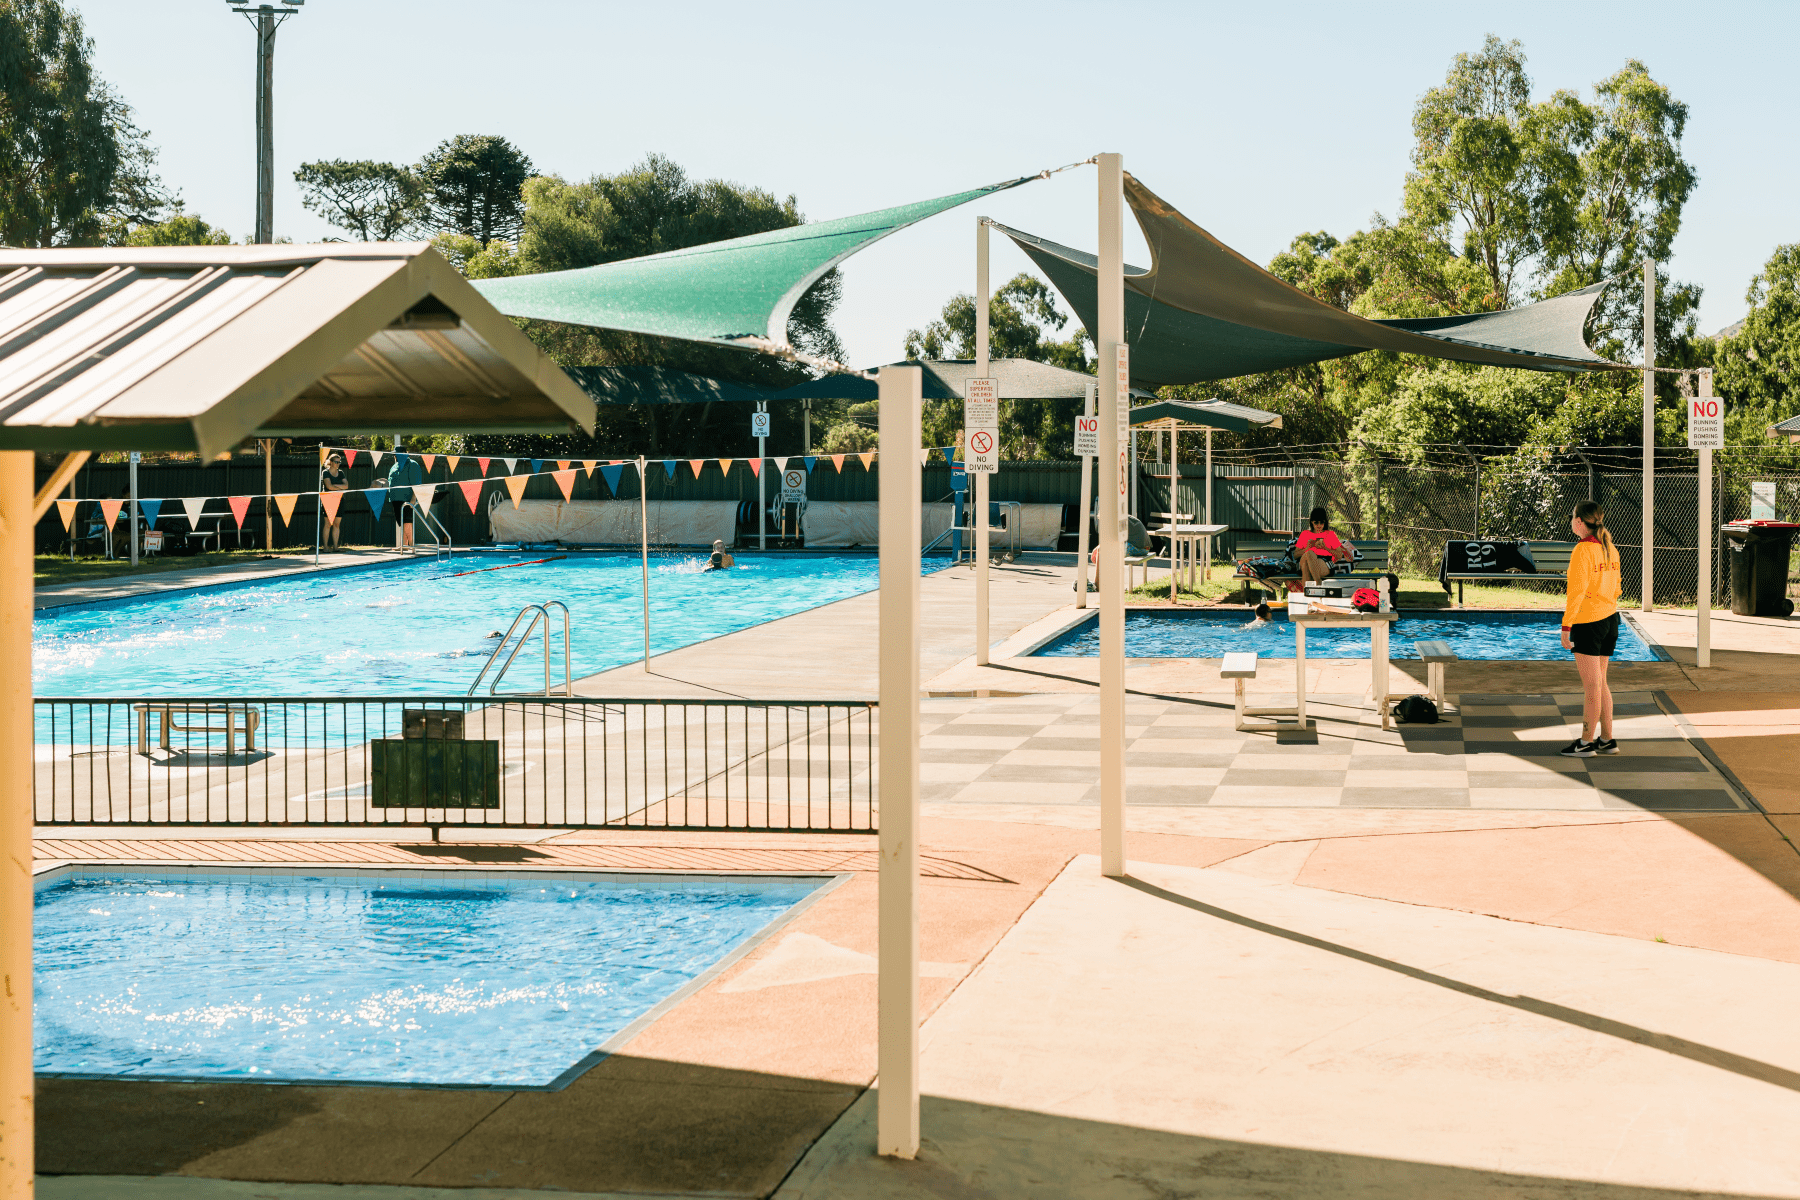 Binalong Memorial Swimming Pool